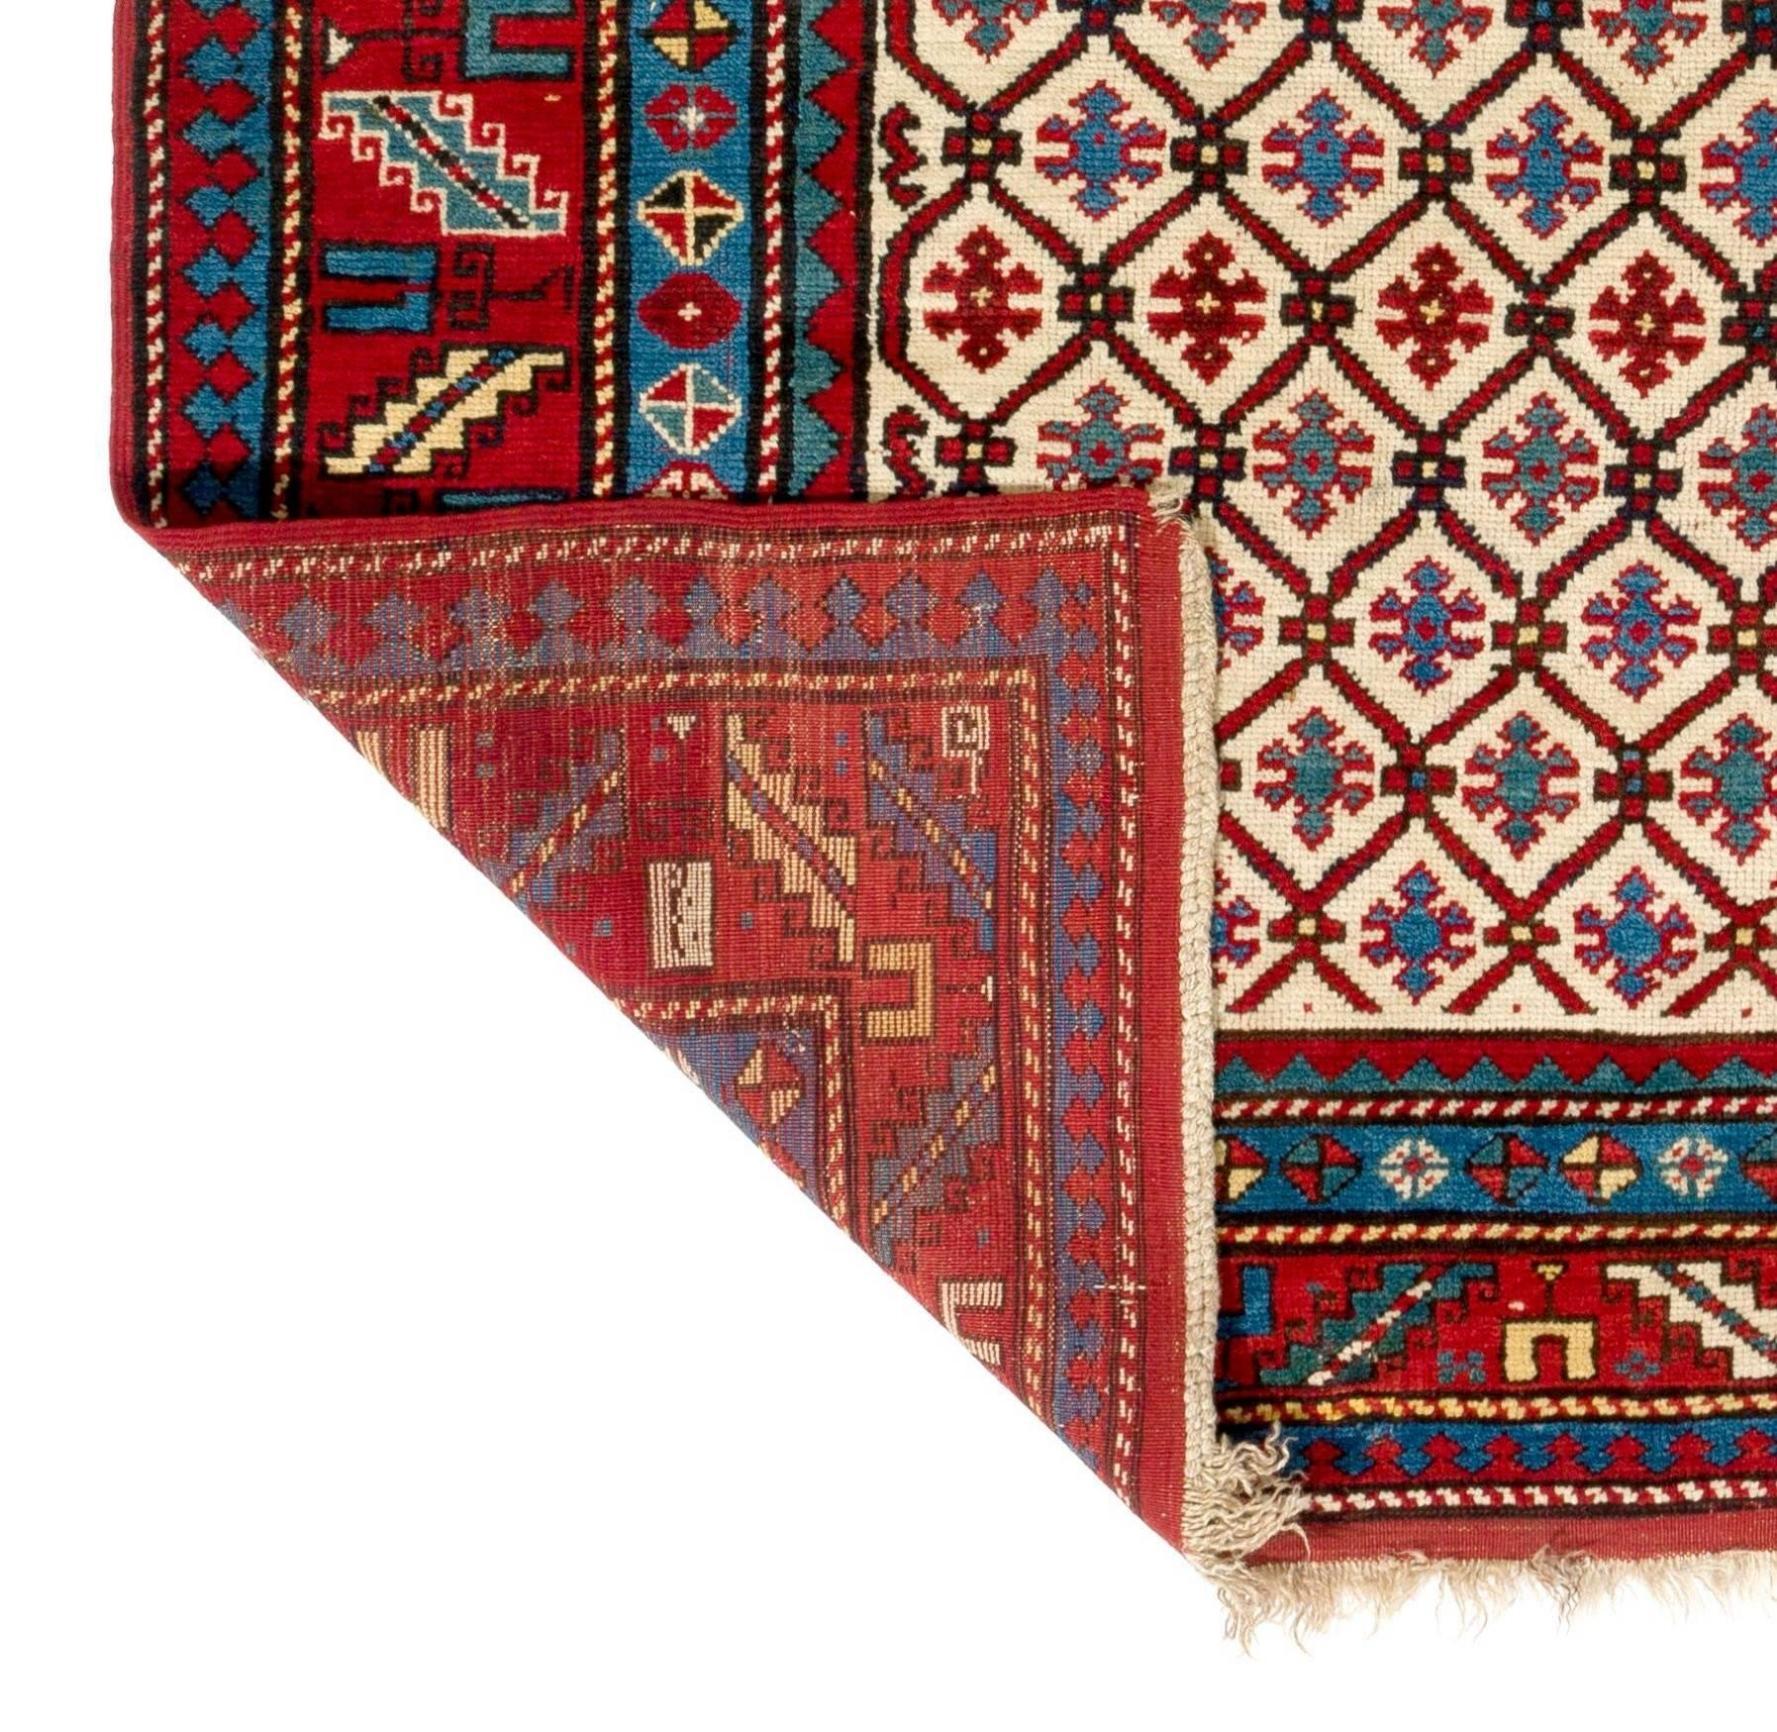 Antiker kaukasischer Kazak-Teppich. Ausgezeichneter Zustand, voller Flor, alles original
Keine Reparaturen oder Probleme.
100% Wolle und natürliche Farbstoffe
Provenienz: Eine New Yorker Collection'S. Maße: 4'x7'